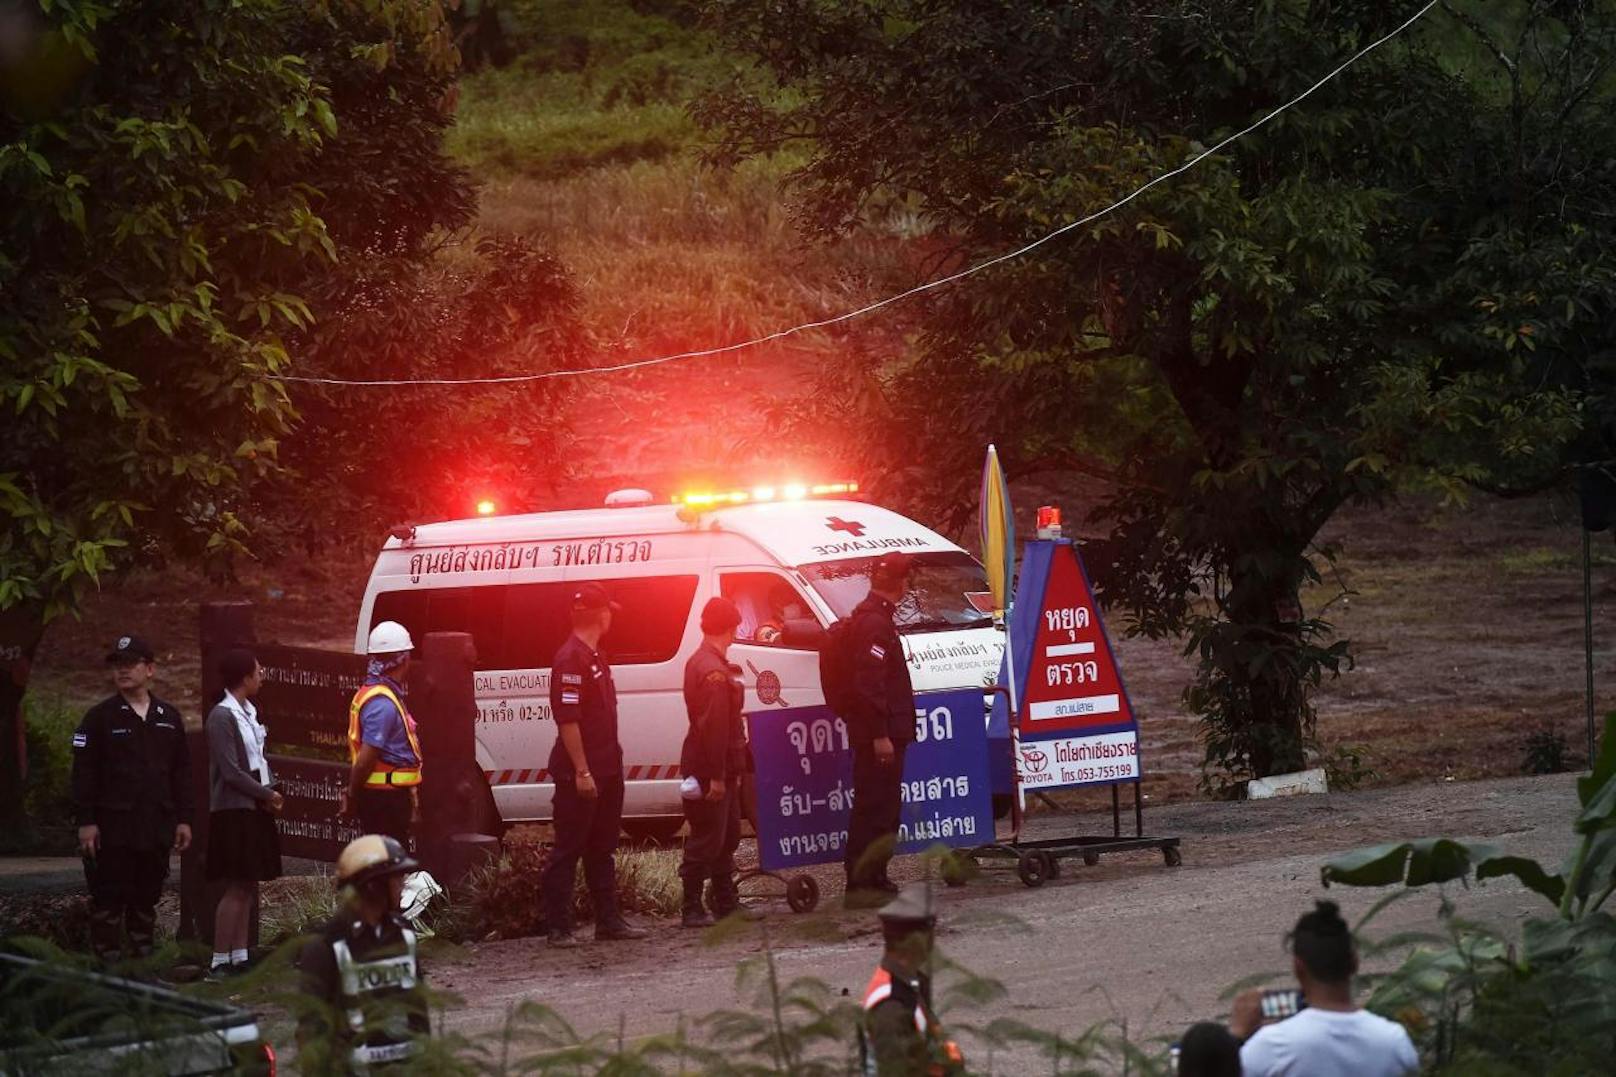 Ein Krankenwagen brachte die geretteten Burschen zu einem nahegelegenen Flugplatz. Von Dort wurden sie mit einem Hubschrauber zum Militärflughafen der Stadt Chiang Rai geflogen. Dort warteten bereits weitere Krankenwagen, um die Geretteten ins Spital der Stadt zu bringen, wo sie medizinisch versorgt werden.